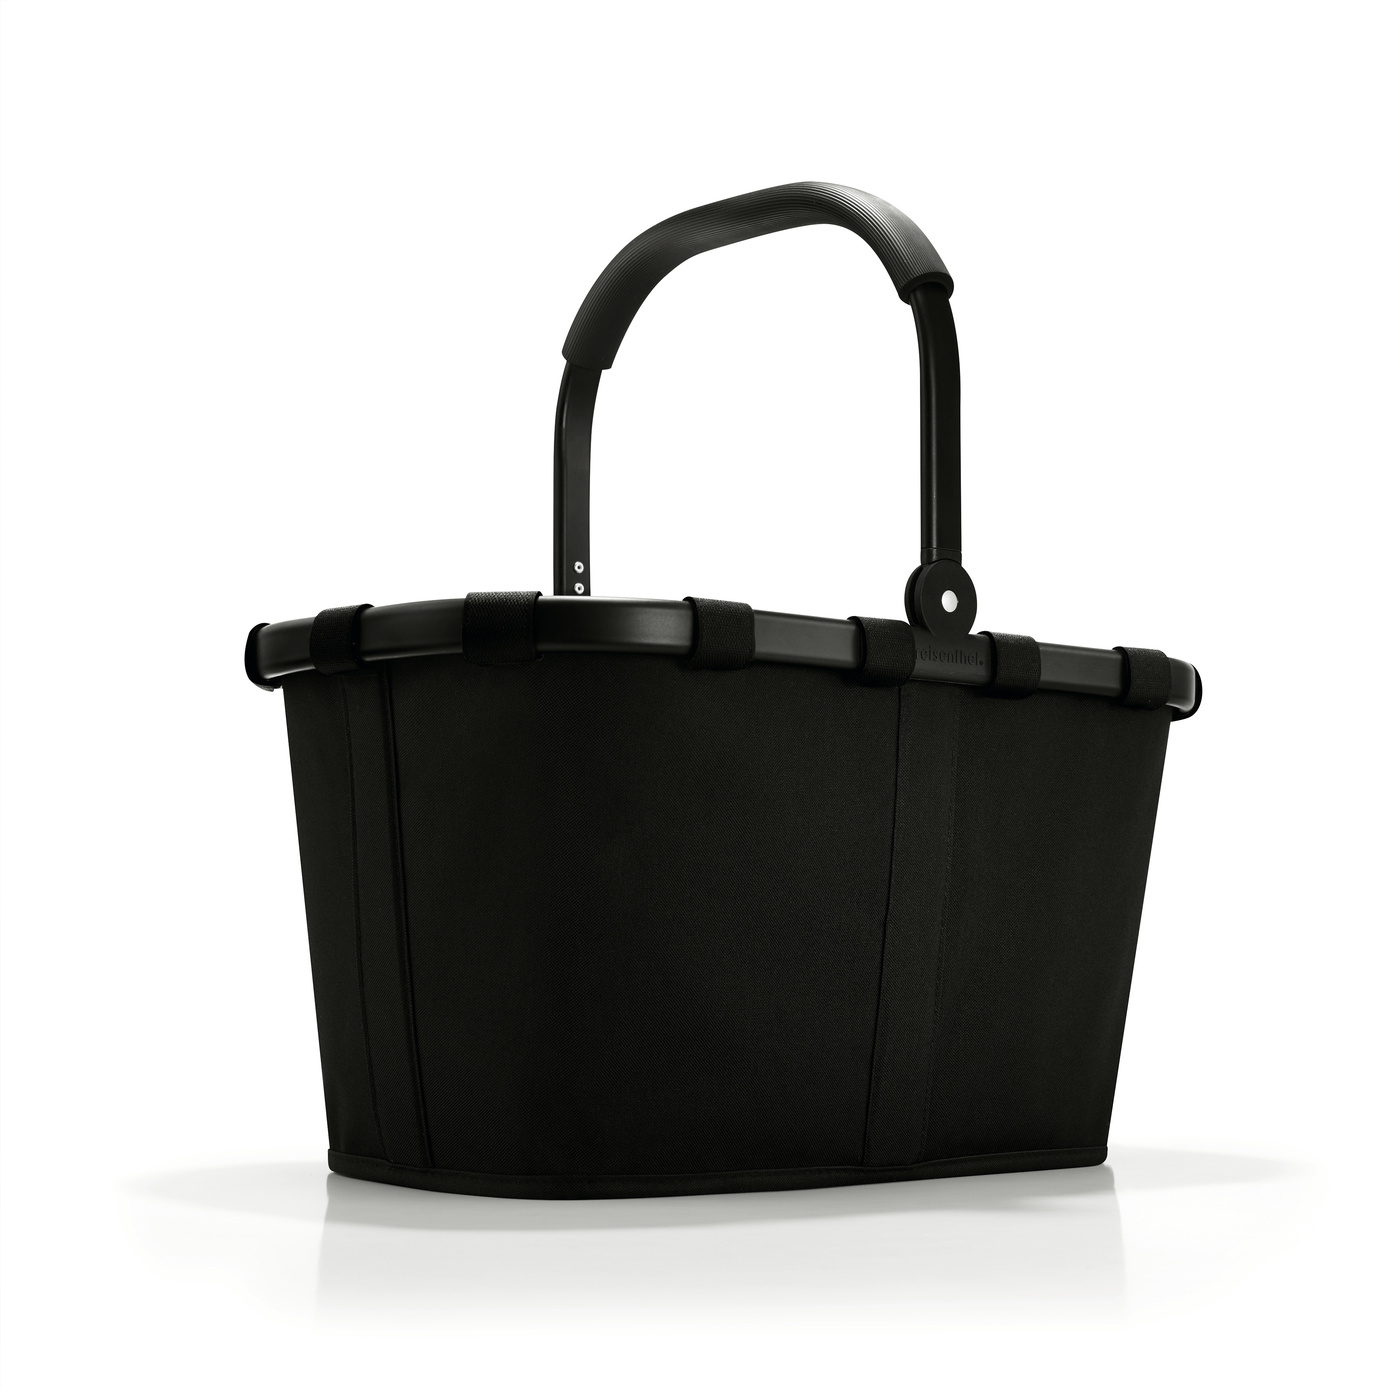 Nákupní košík Reisenthel Carrybag Frame black/black